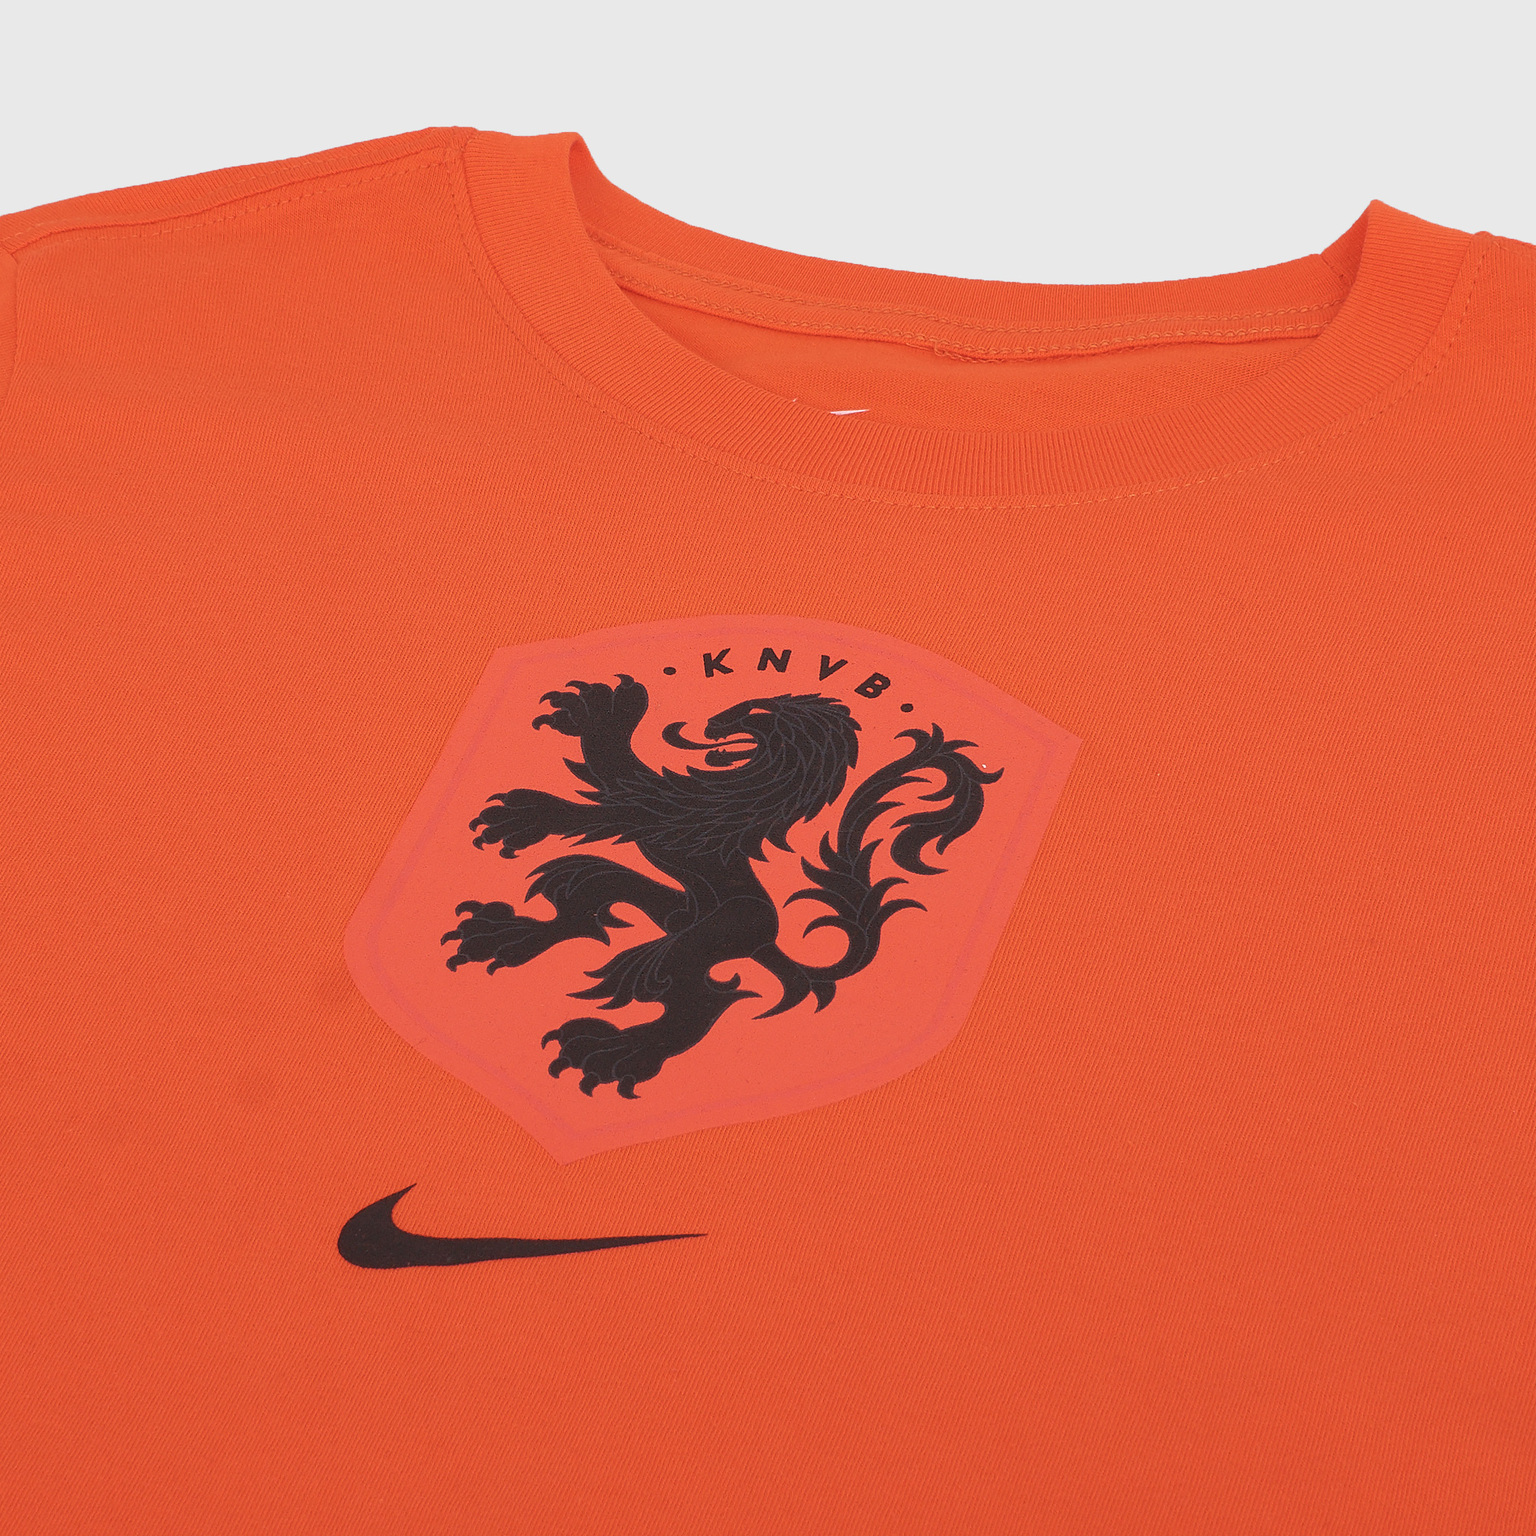 Футболка подростковая хлопковая Nike сборной Нидерландов сезон 2020/21